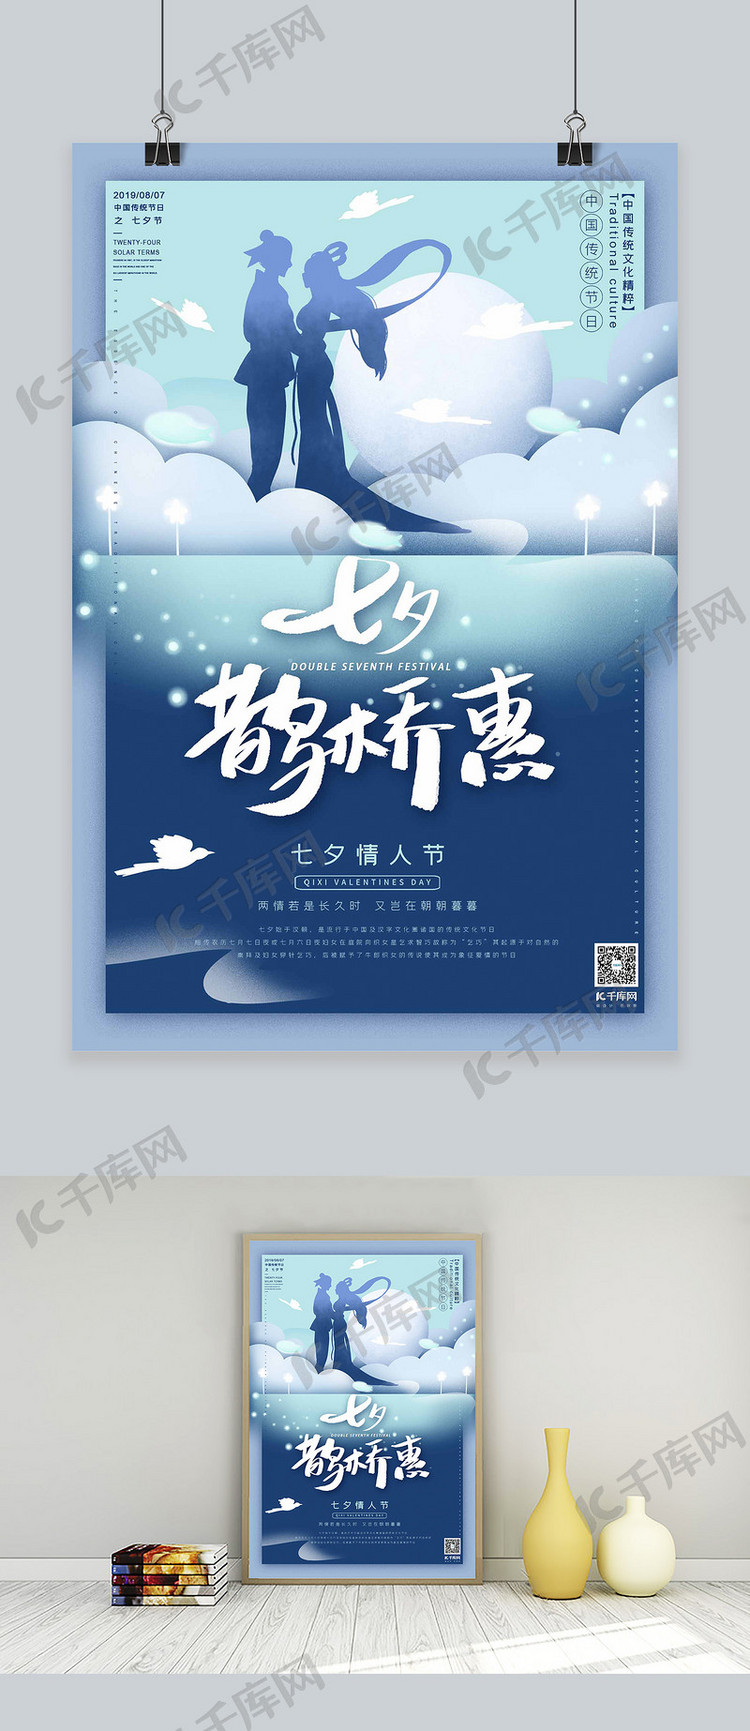 中国传统节日七夕节蓝绿色调梦幻剪纸风格海报